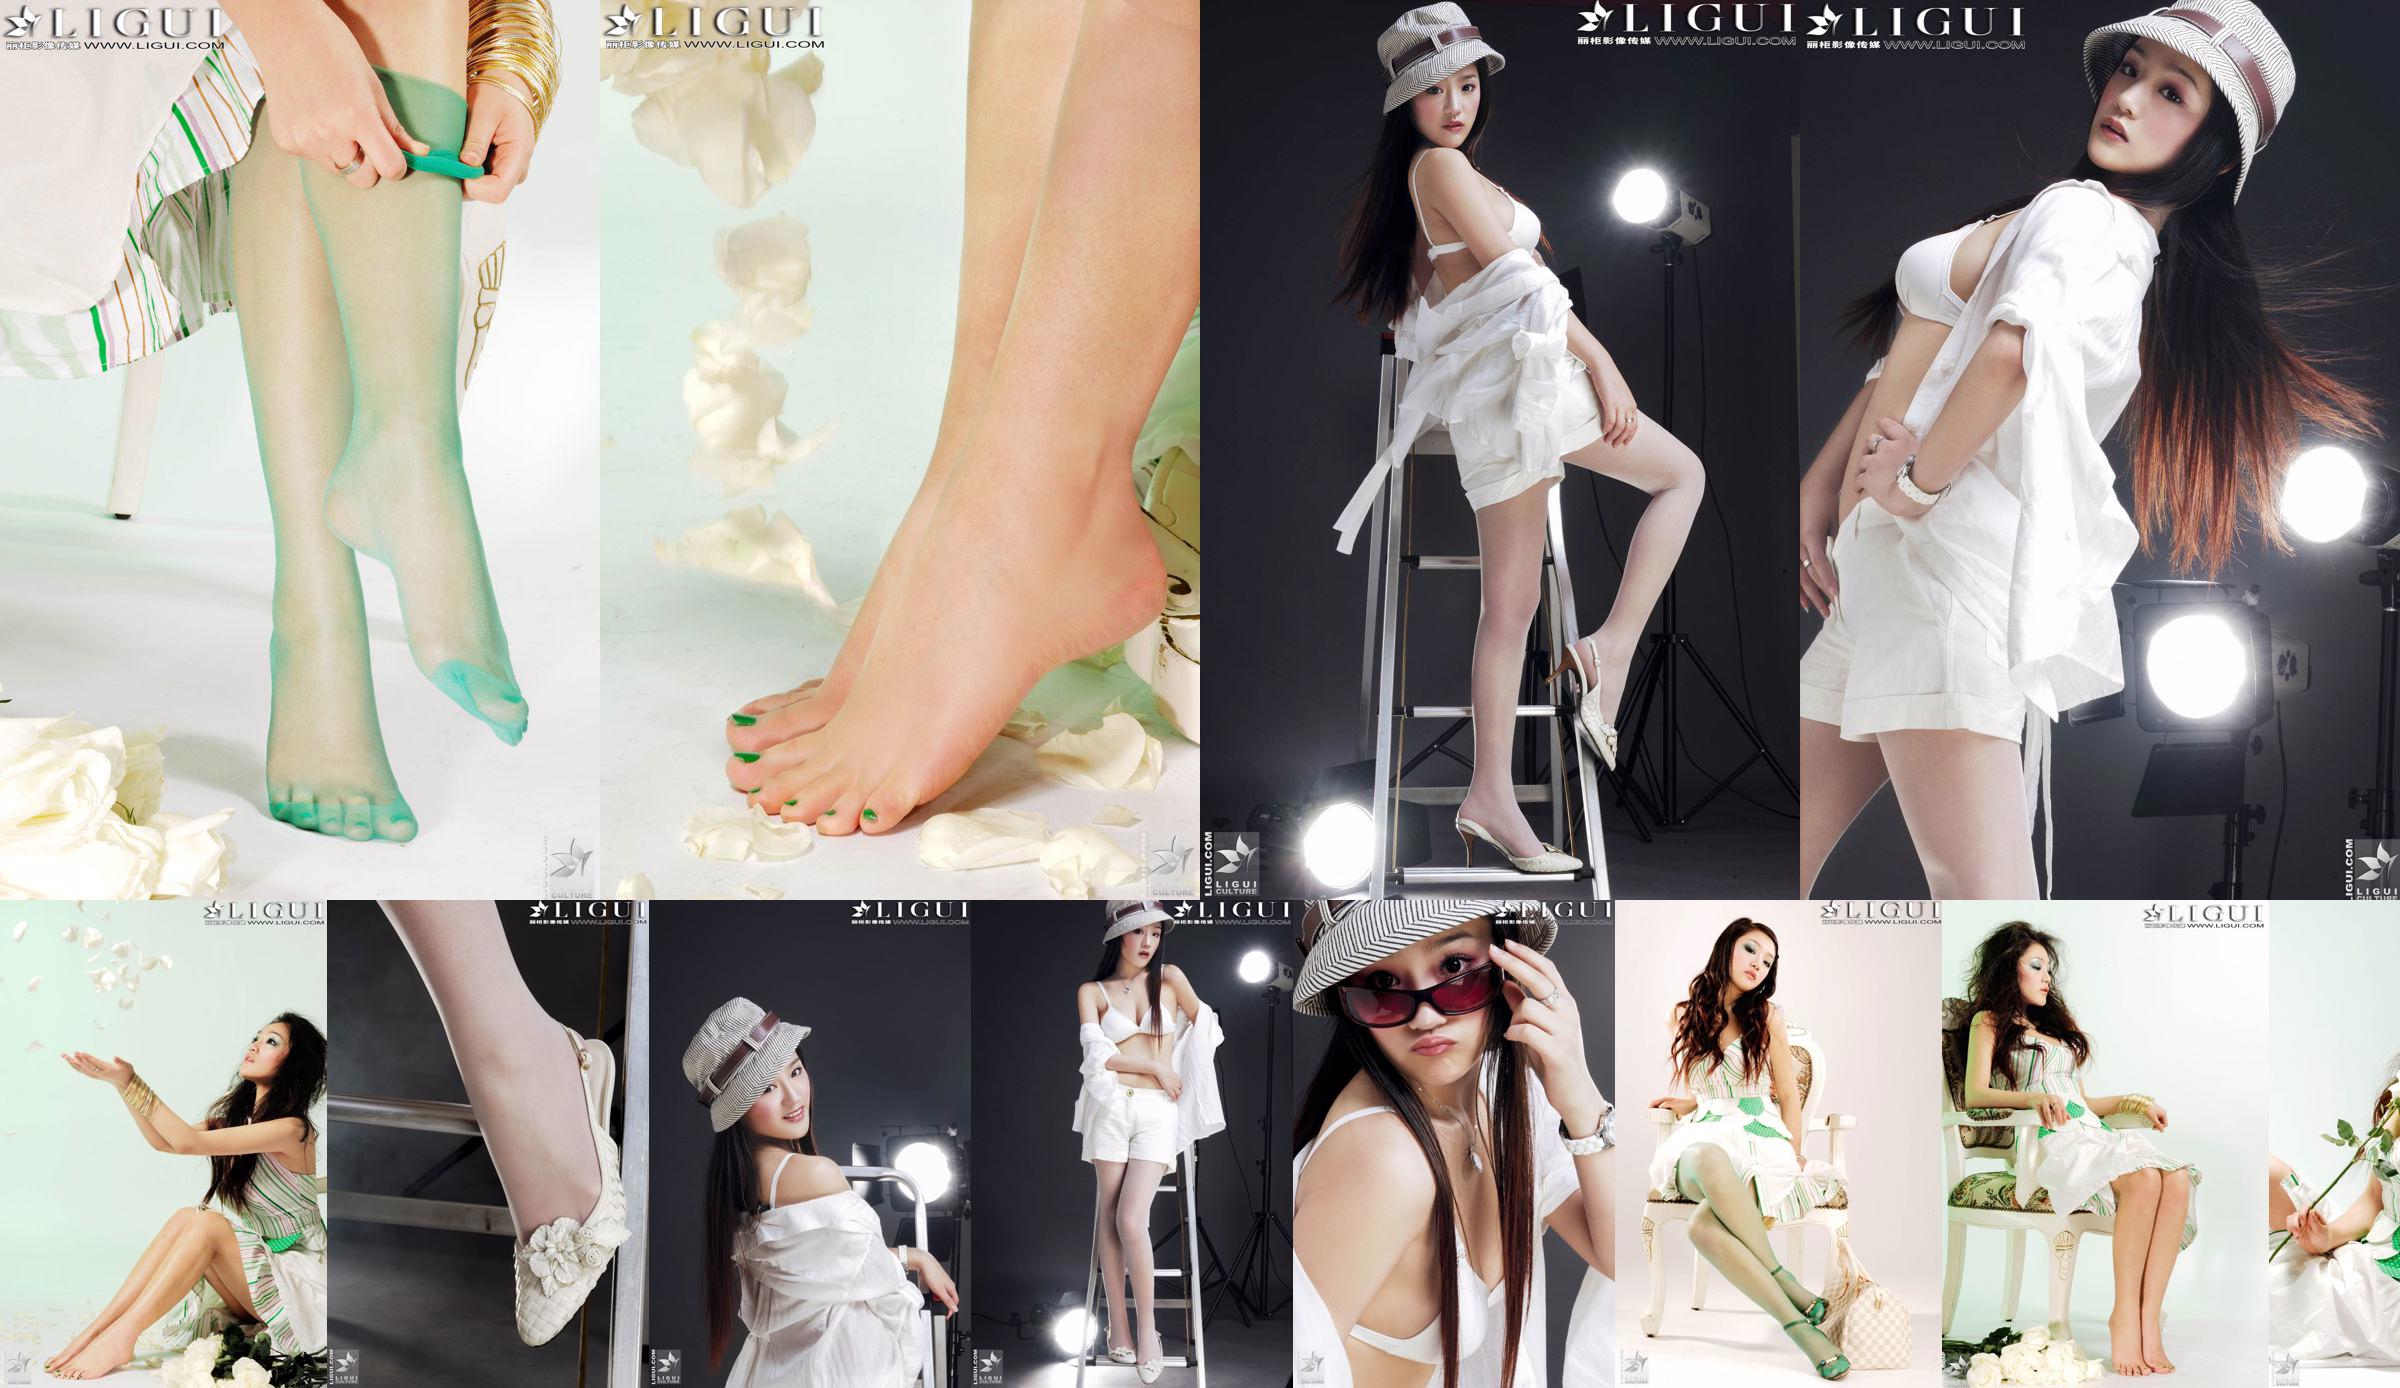 [丽 柜 贵 foot LiGui] Фотография красивых ног и шелковых ступней модели Чжан Цзинъянь "Модная ступня" No.09be20 Страница 7